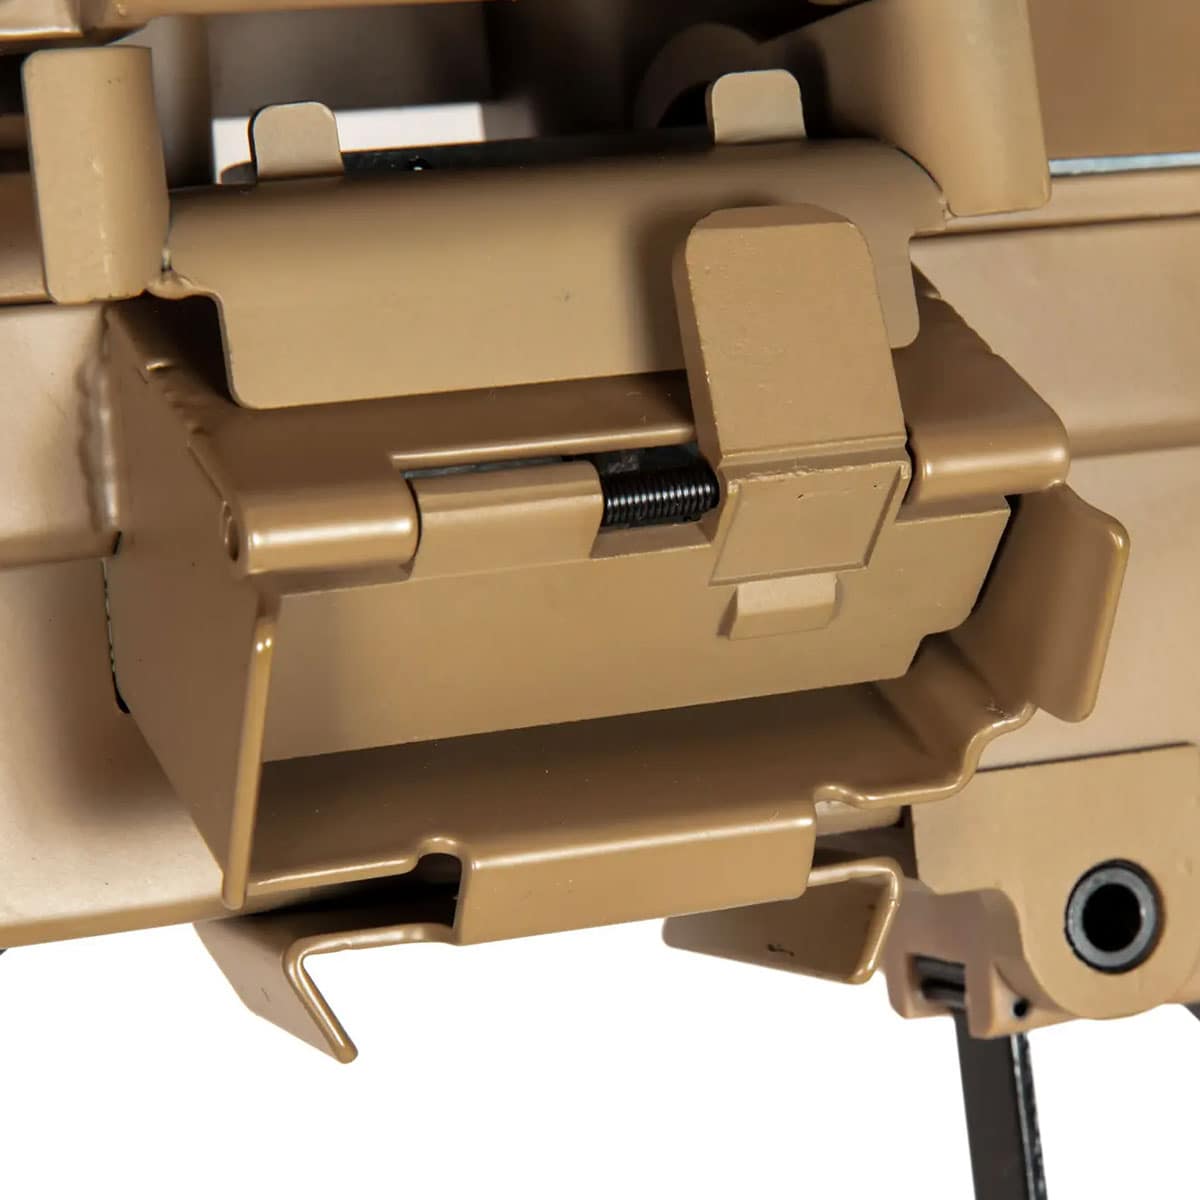 Karabin maszynowy AEG Specna Arms SA-249 MK2 EDGE - Tan